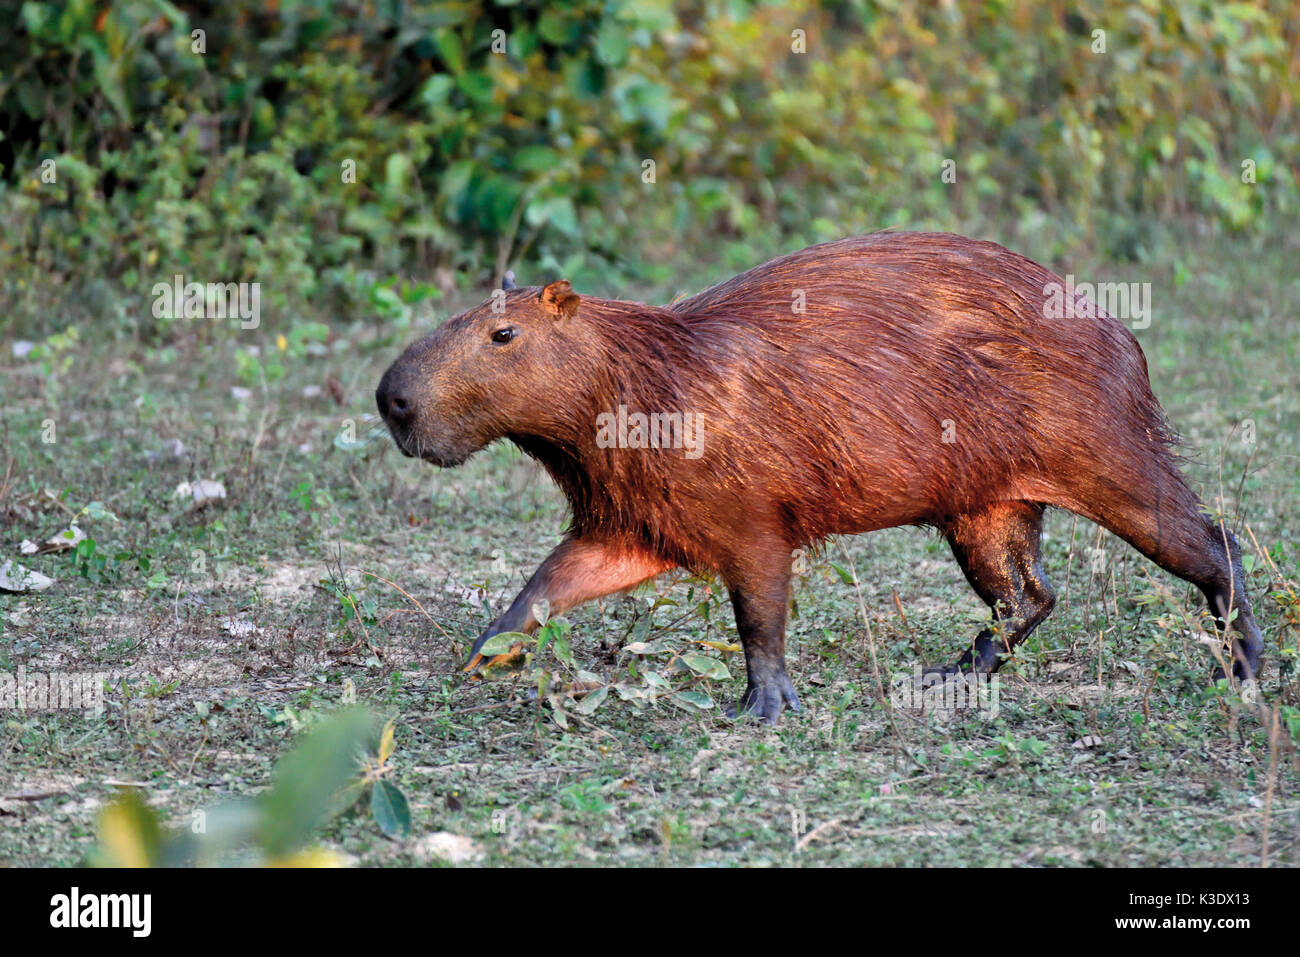 Brasilien, Pantanal, Capibara-Pfad begehen Wasser Hydrochoerus hydrochaeris, Schweine, Stockfoto